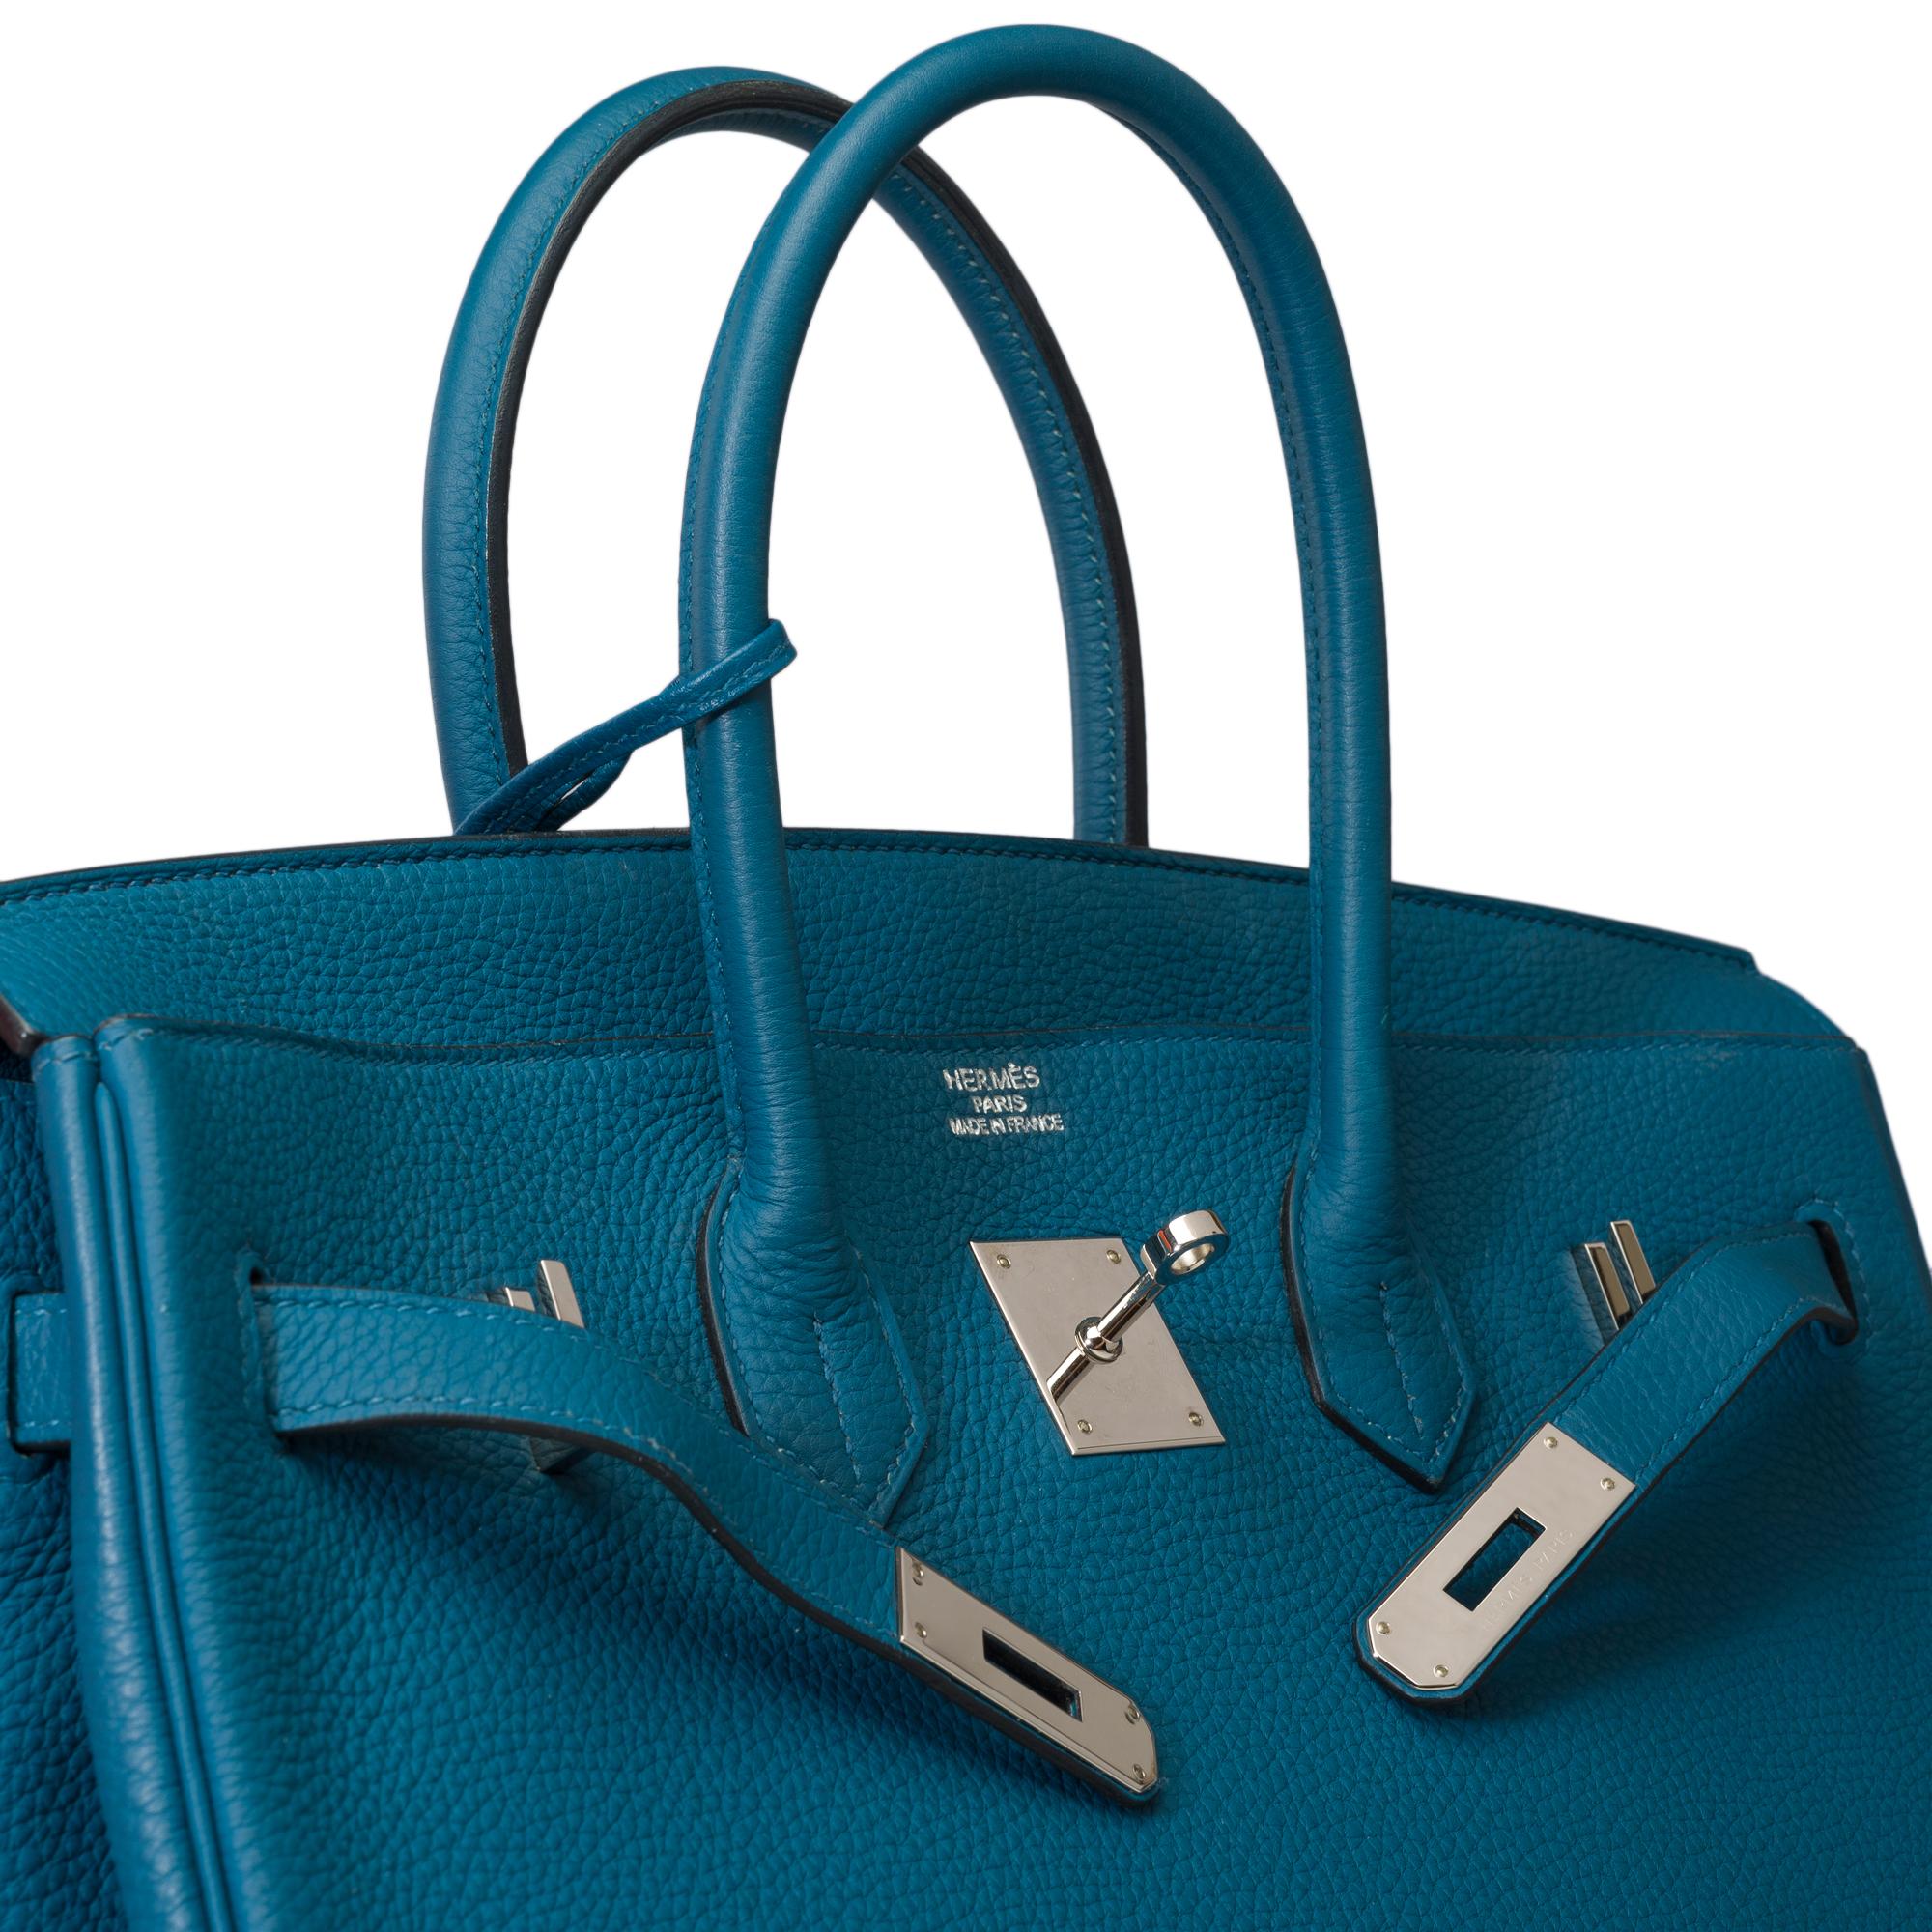 Amazing Hermes Birkin 35 handbag in Bleu Colvert Togo leather, SHW For Sale 3